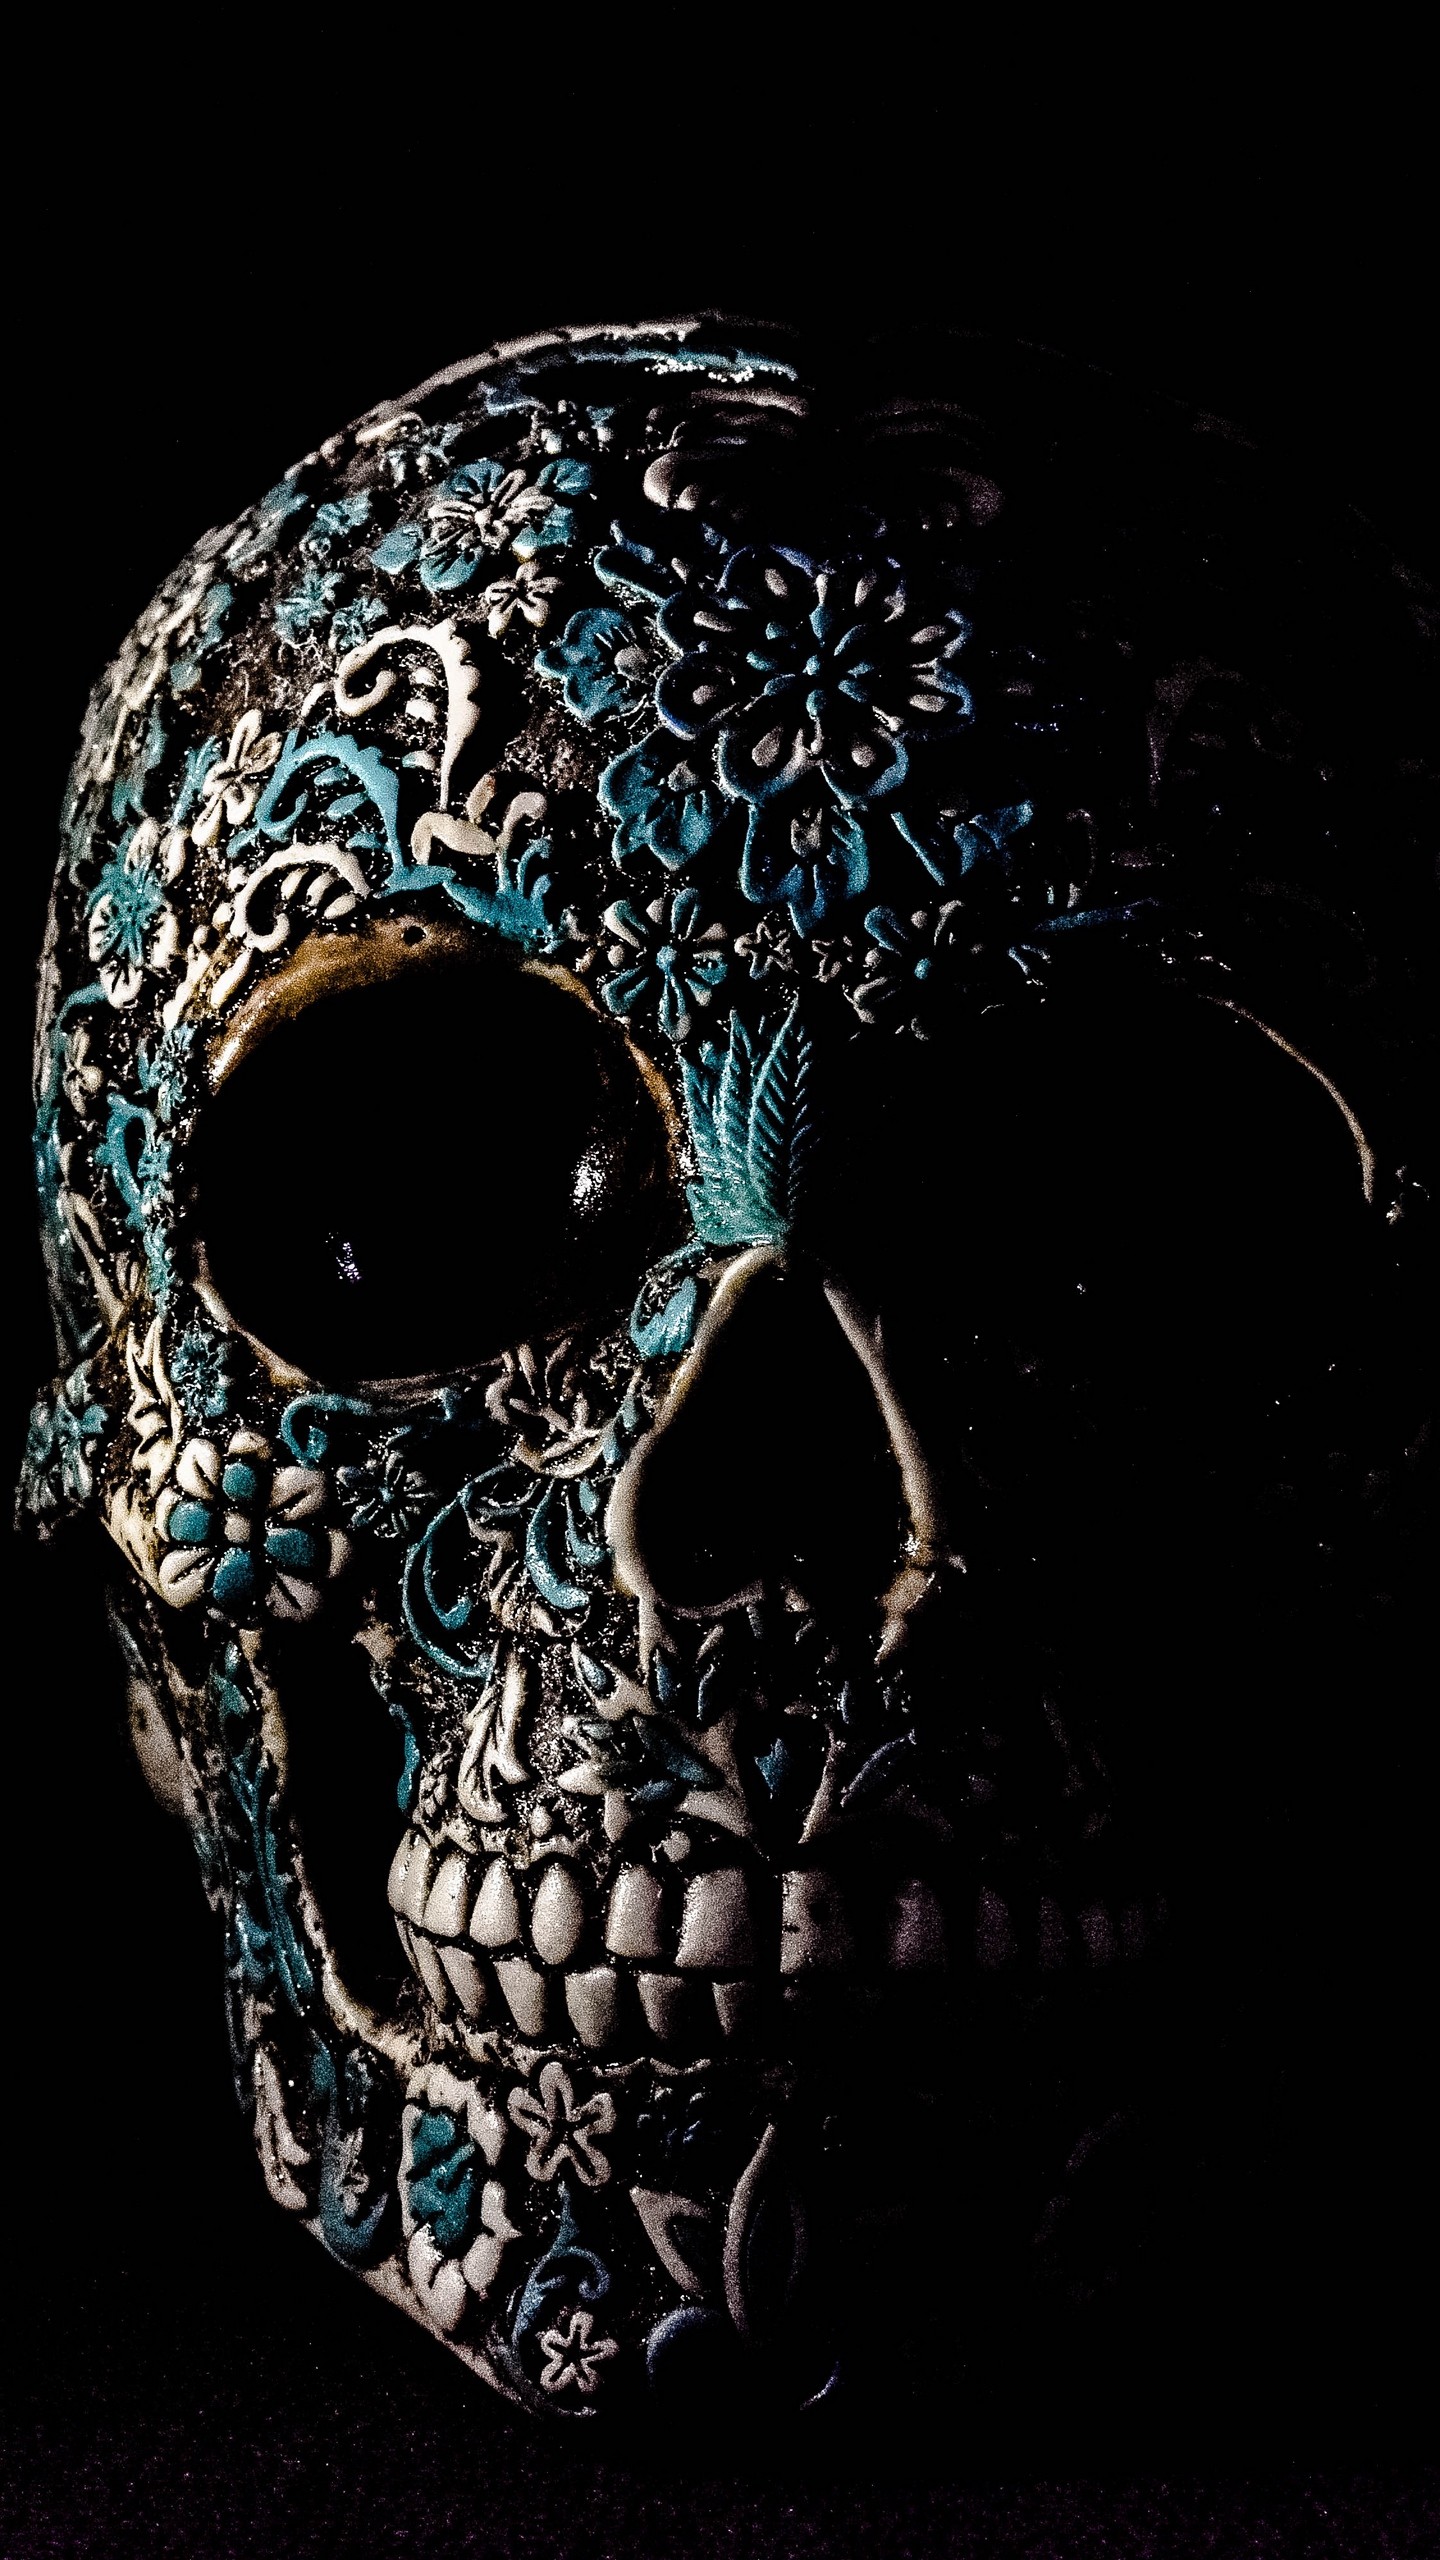 1440x2560 Download wallpaper skull dark patterns bones qhd jpg  Skull bones  wallpaper